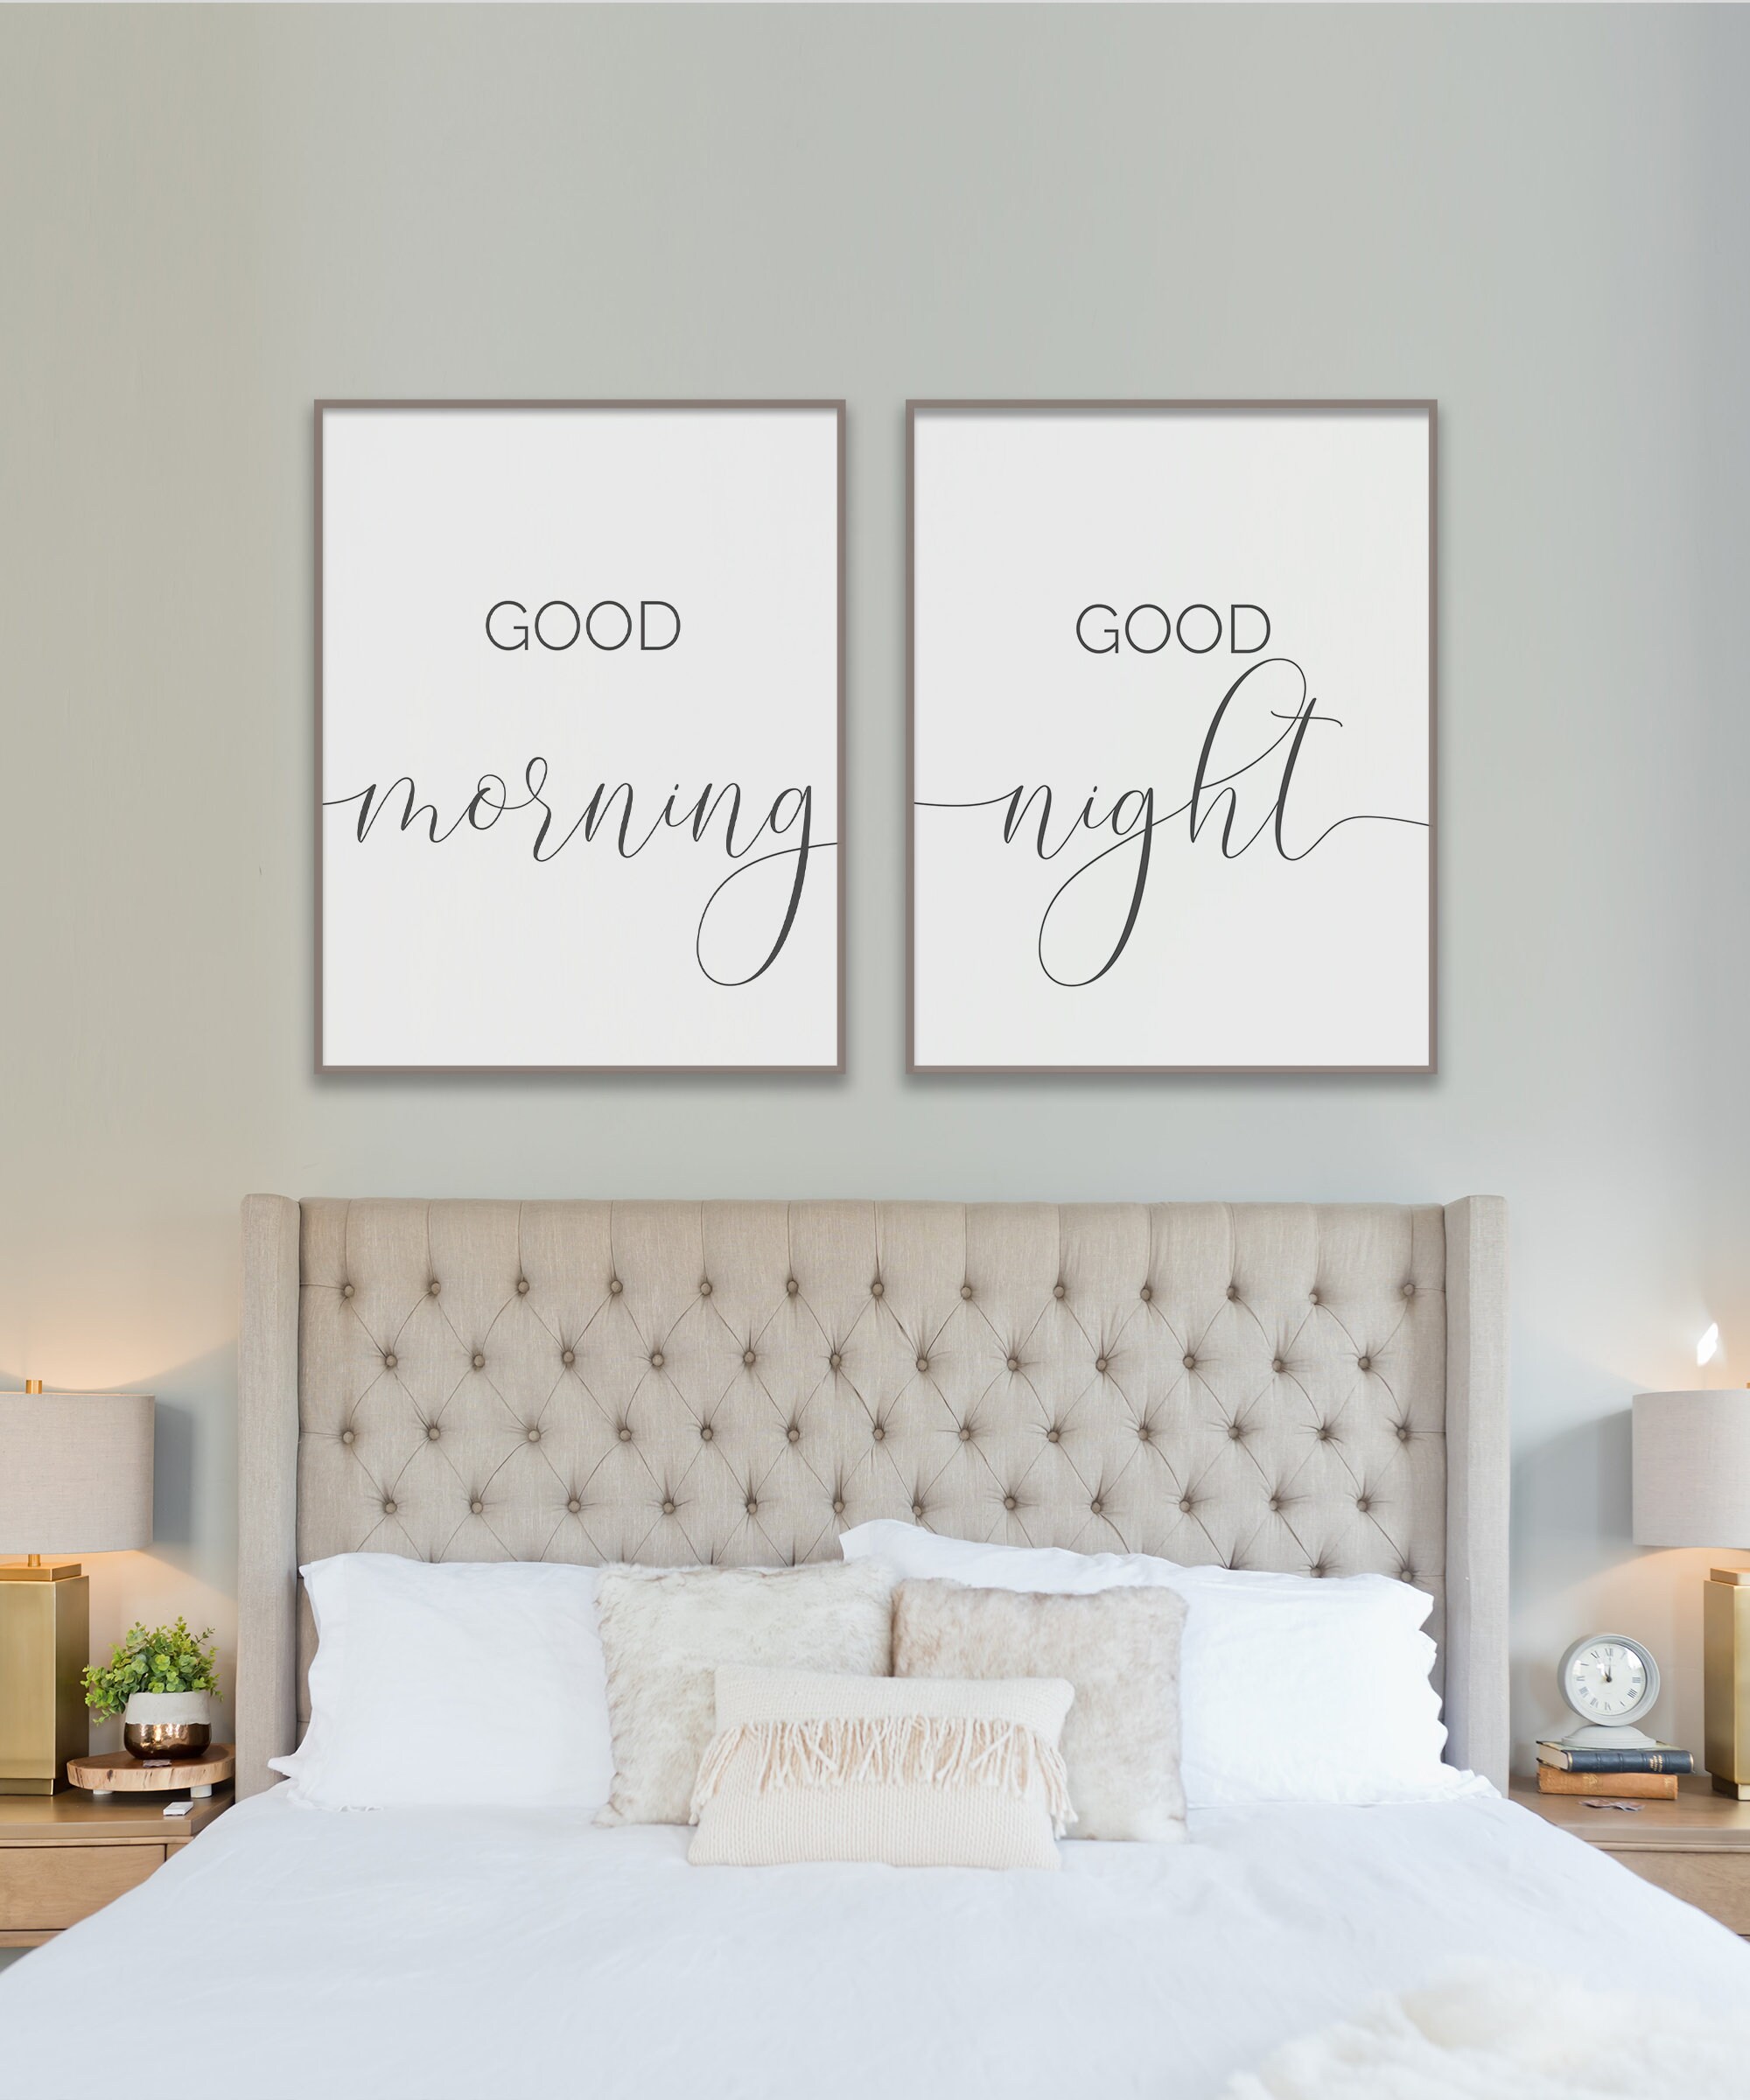 Good morning good night Print Bedroom Wall Art Diptych | Etsy